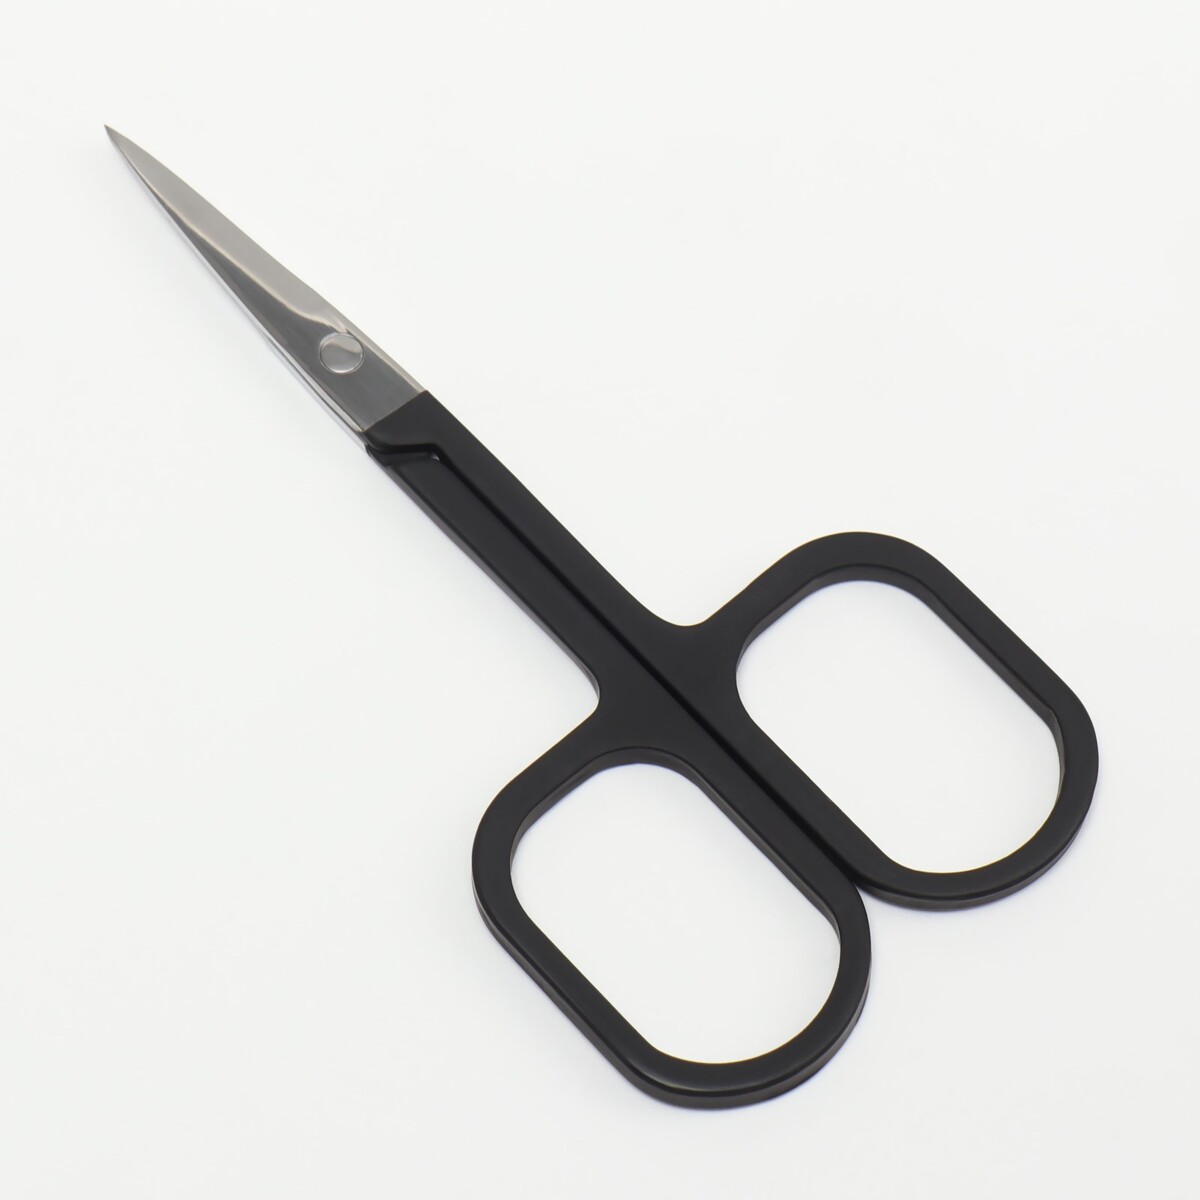 Ножницы маникюрные, узкие, прямые, с прорезиненными ручками, 9 см, цвет серебристый/черный ножницы безопасные прямые 9 см серебристый